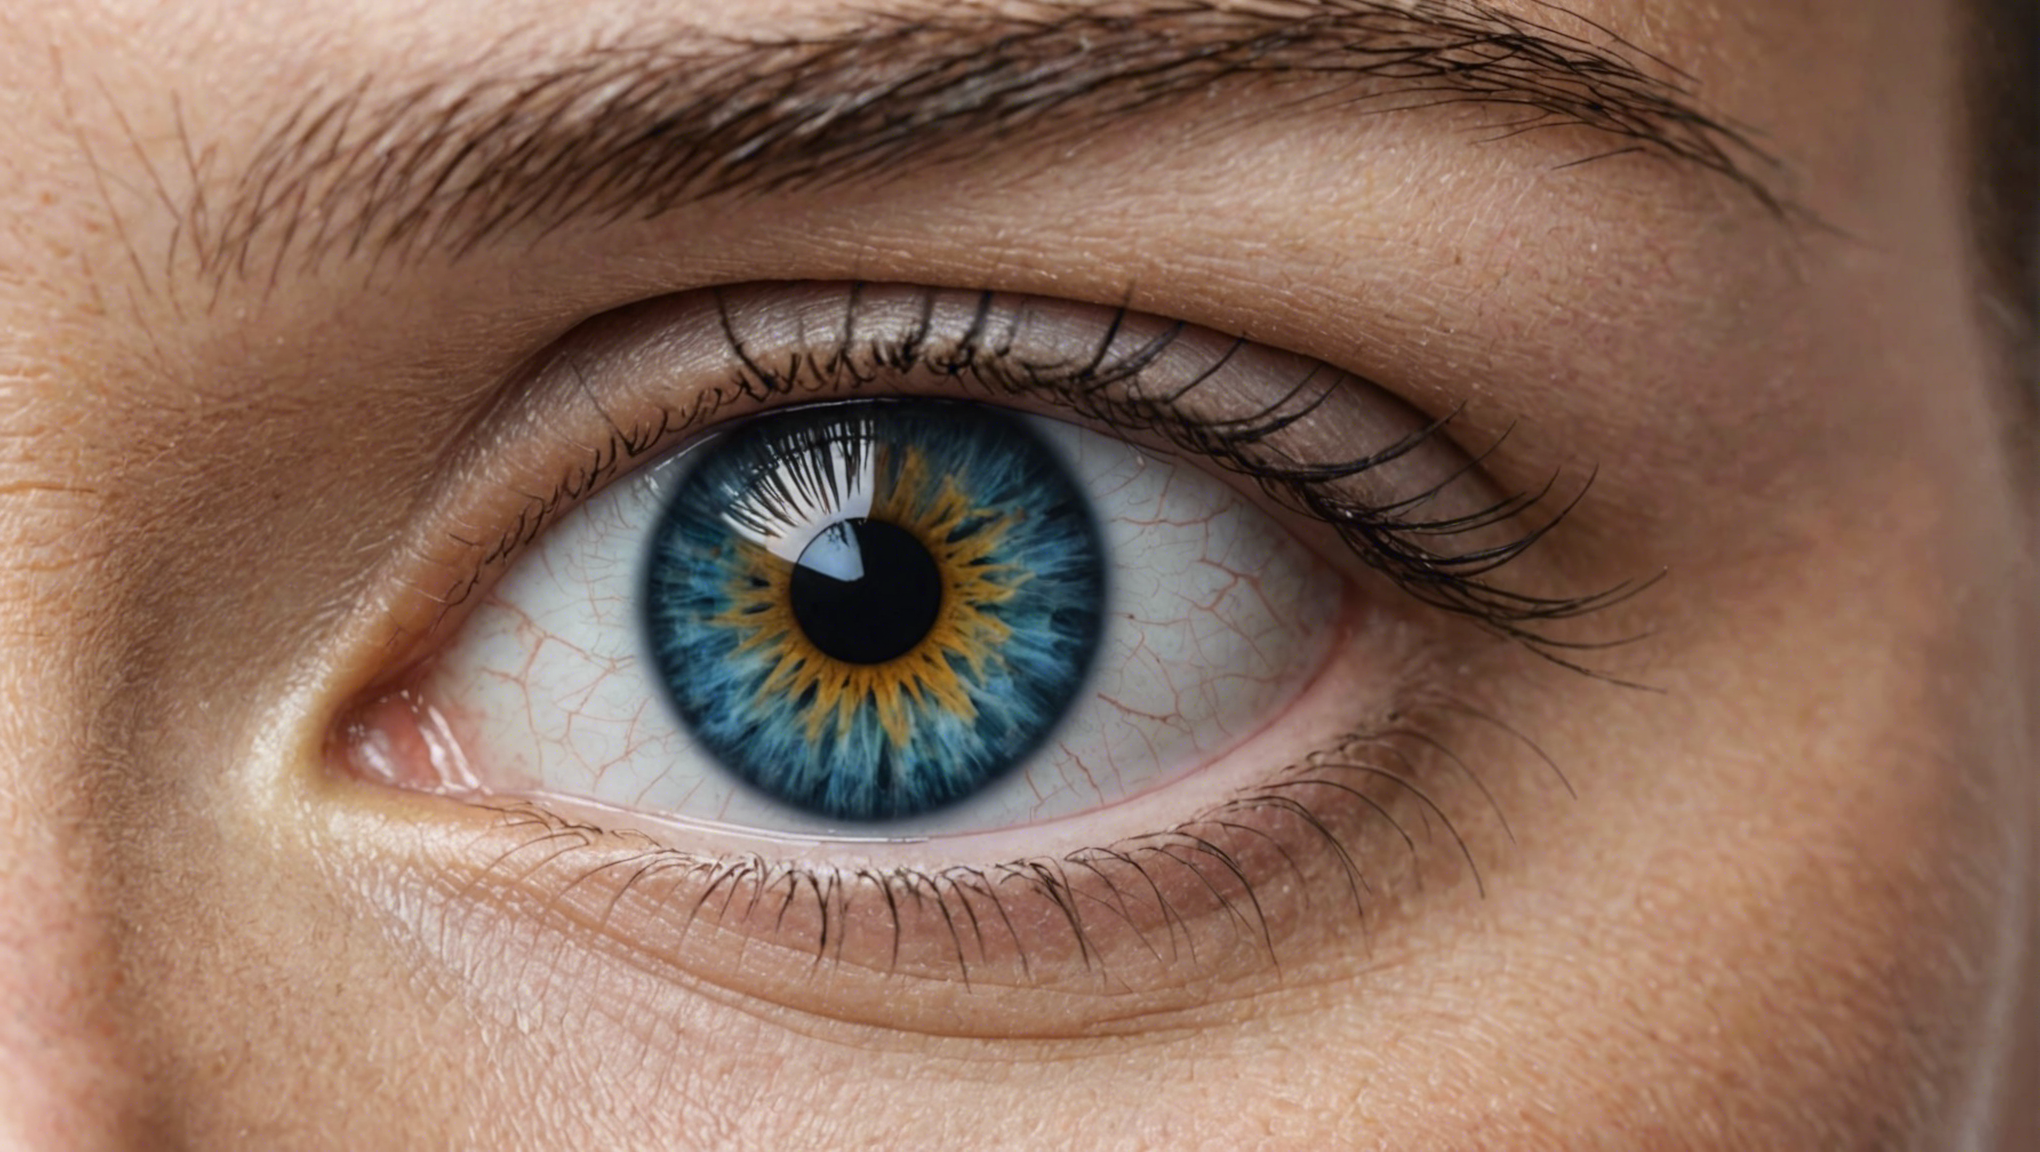 découvrez les risques et complications possibles liés à l'opération des yeux, pour prendre une décision éclairée concernant votre santé ophtalmologique.